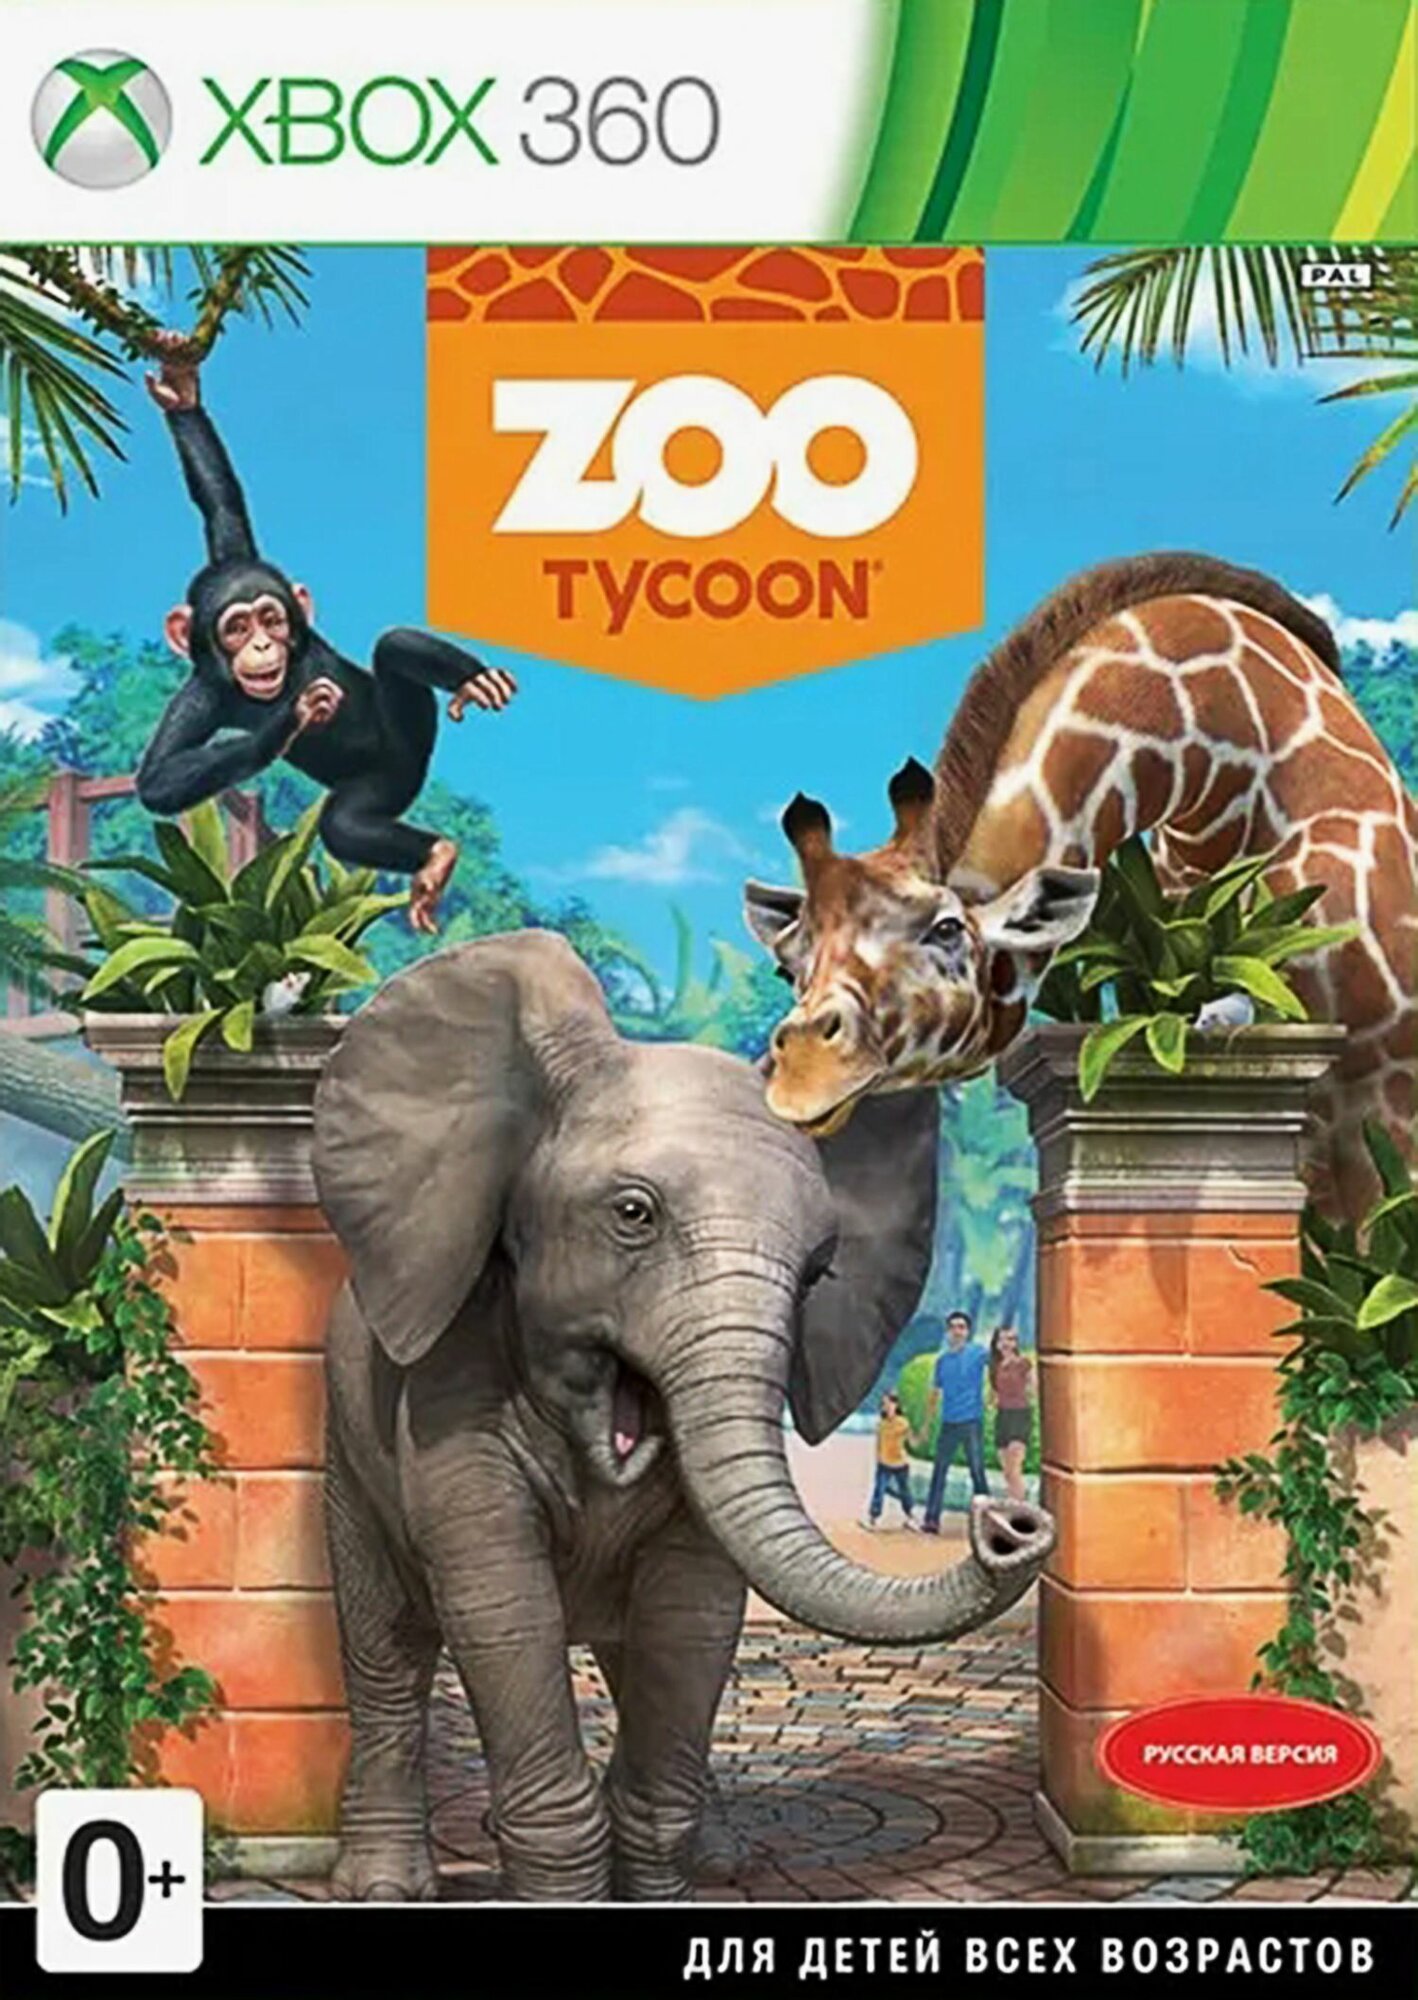 ZOO Tycoon Русская версия Видеоигра на диске Xbox 360